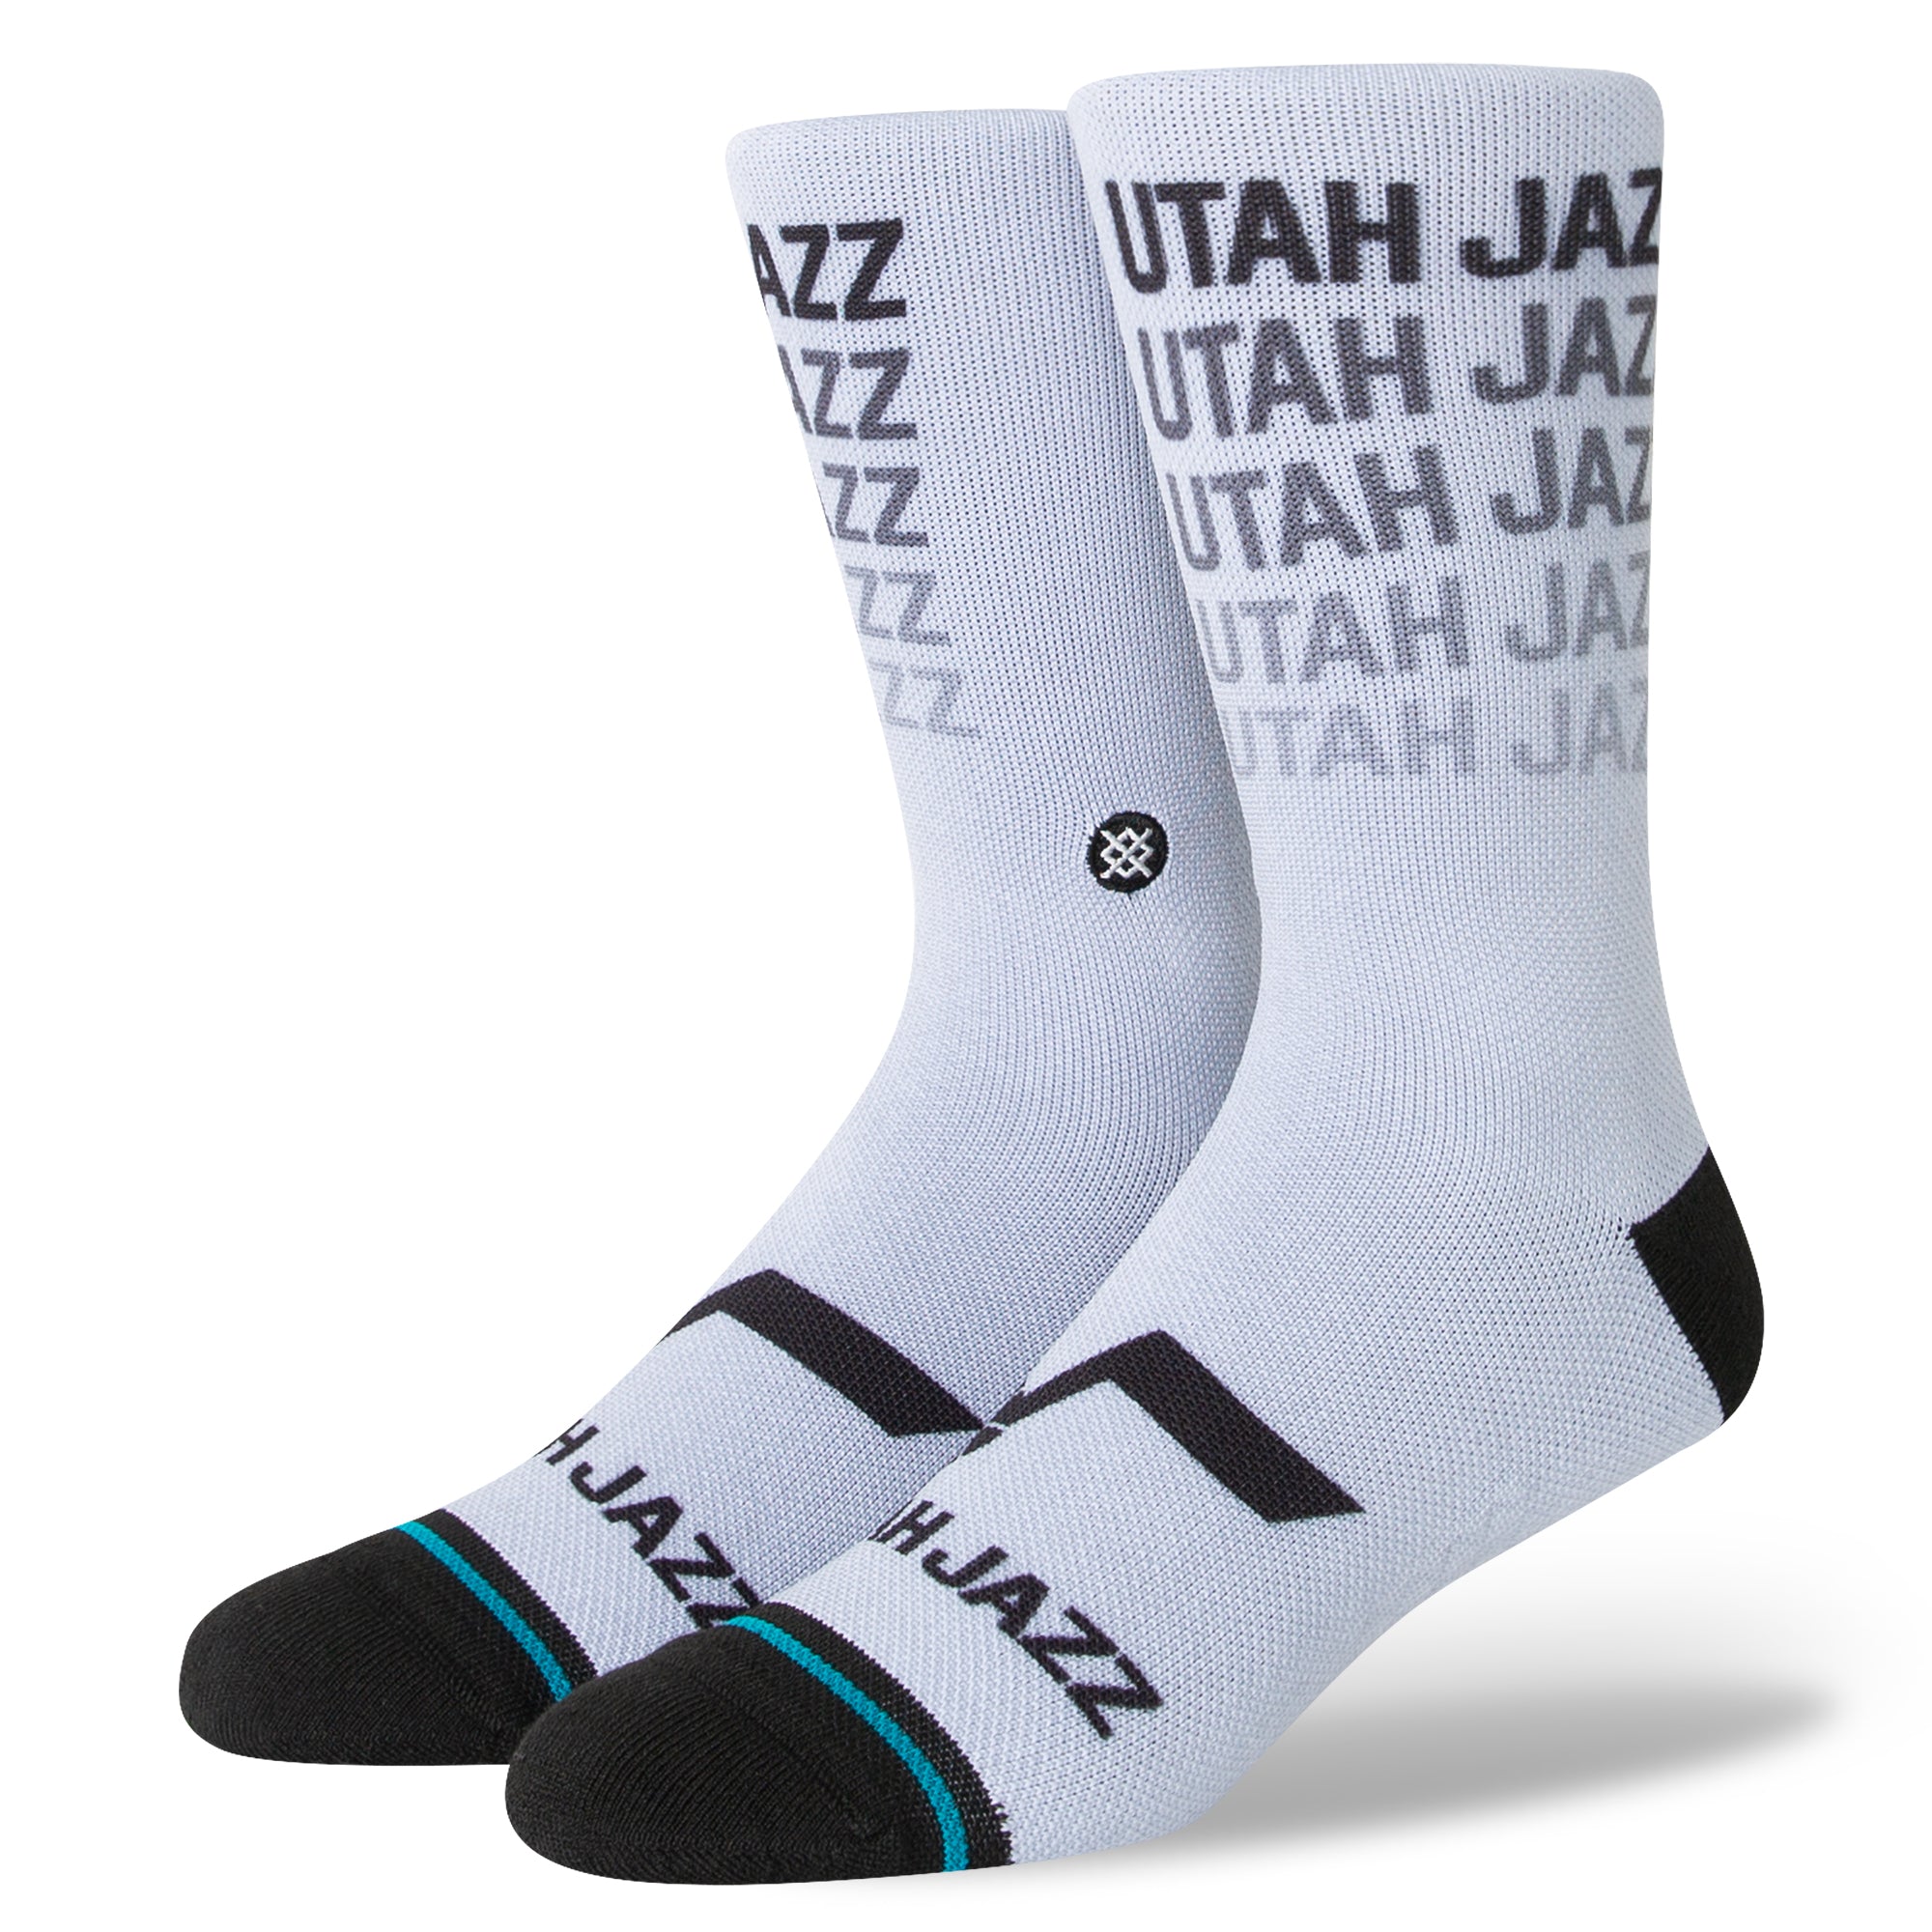 JAZZ REPEAT - Stance-Utah Jazz Team Store